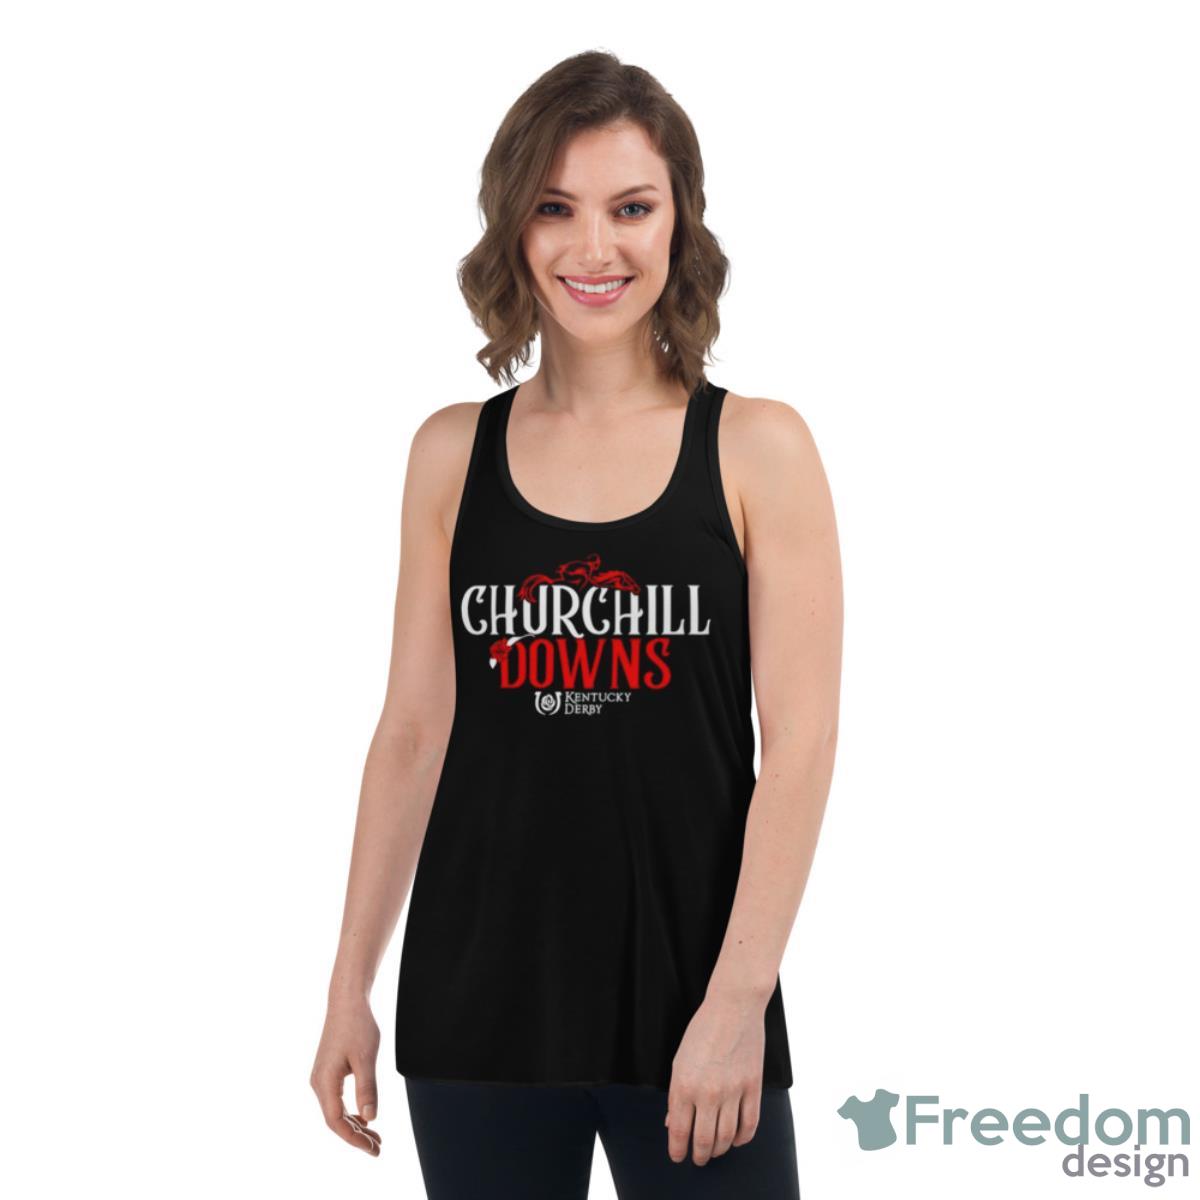 Churchill Downs Kentucky Derby Shirt